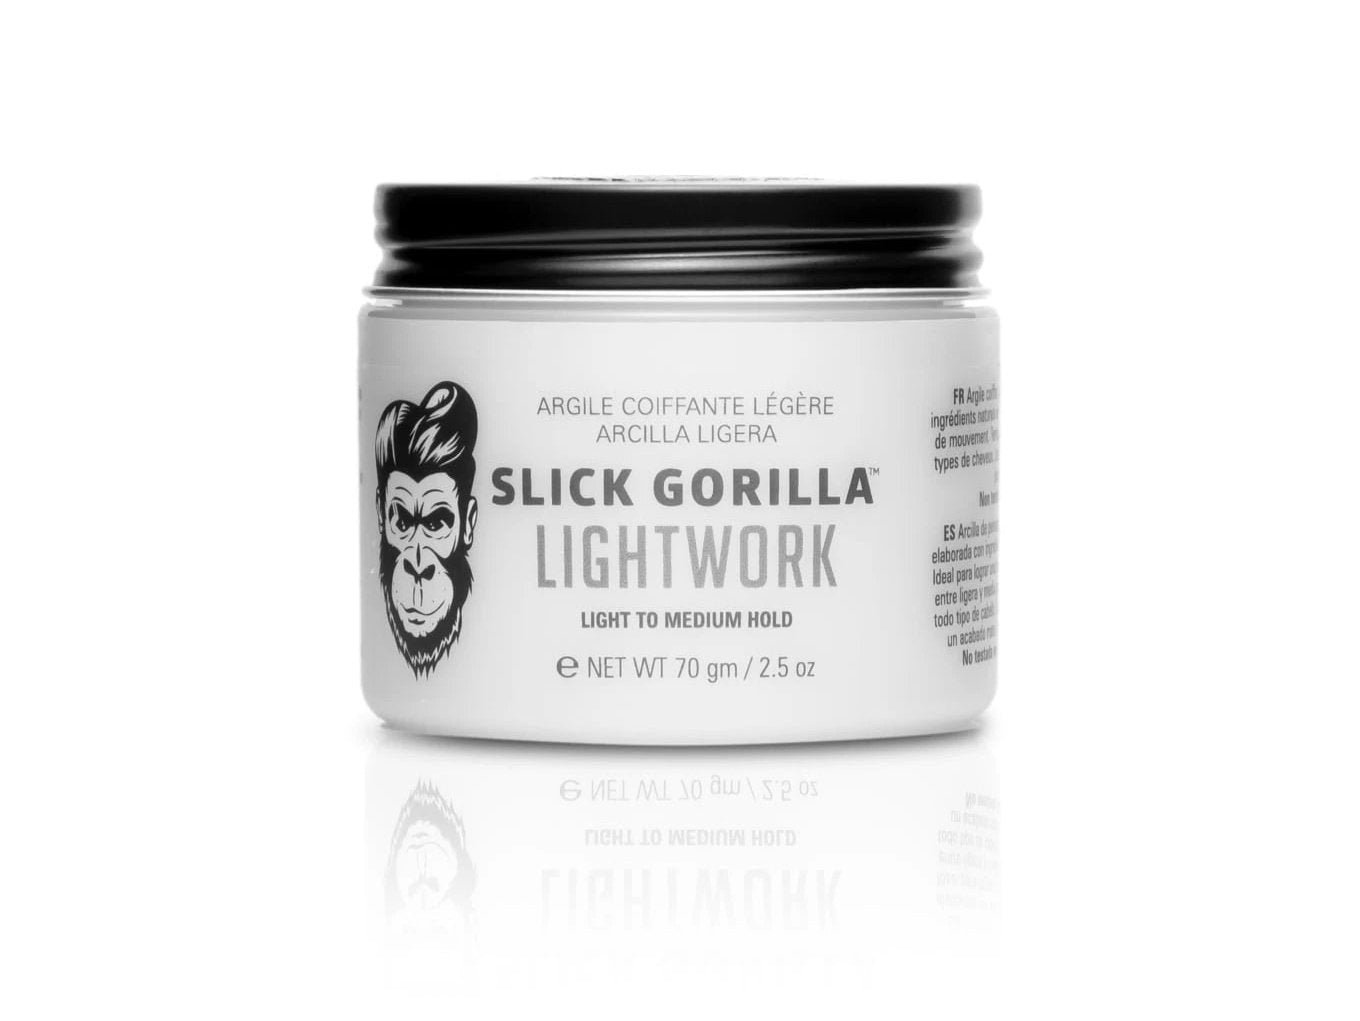 Slick Gorilla ~ Lightwork Hair Styling Pomade 2.5oz